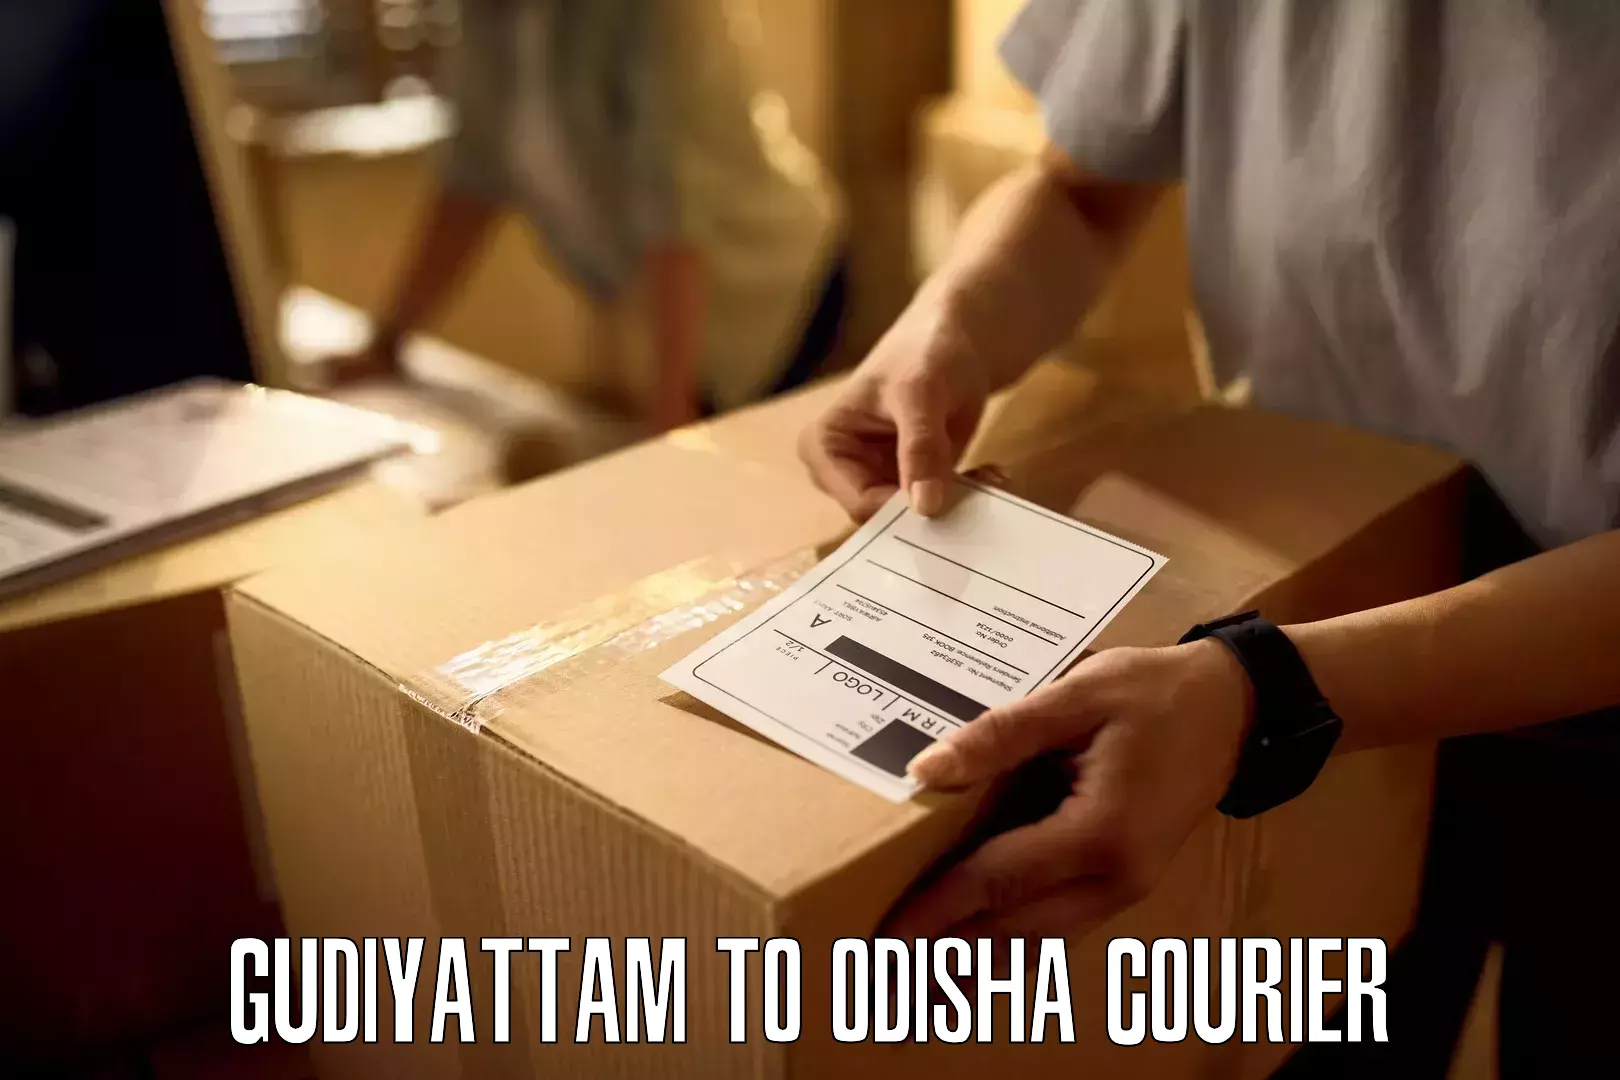 Cash on delivery service Gudiyattam to Nirakarpur